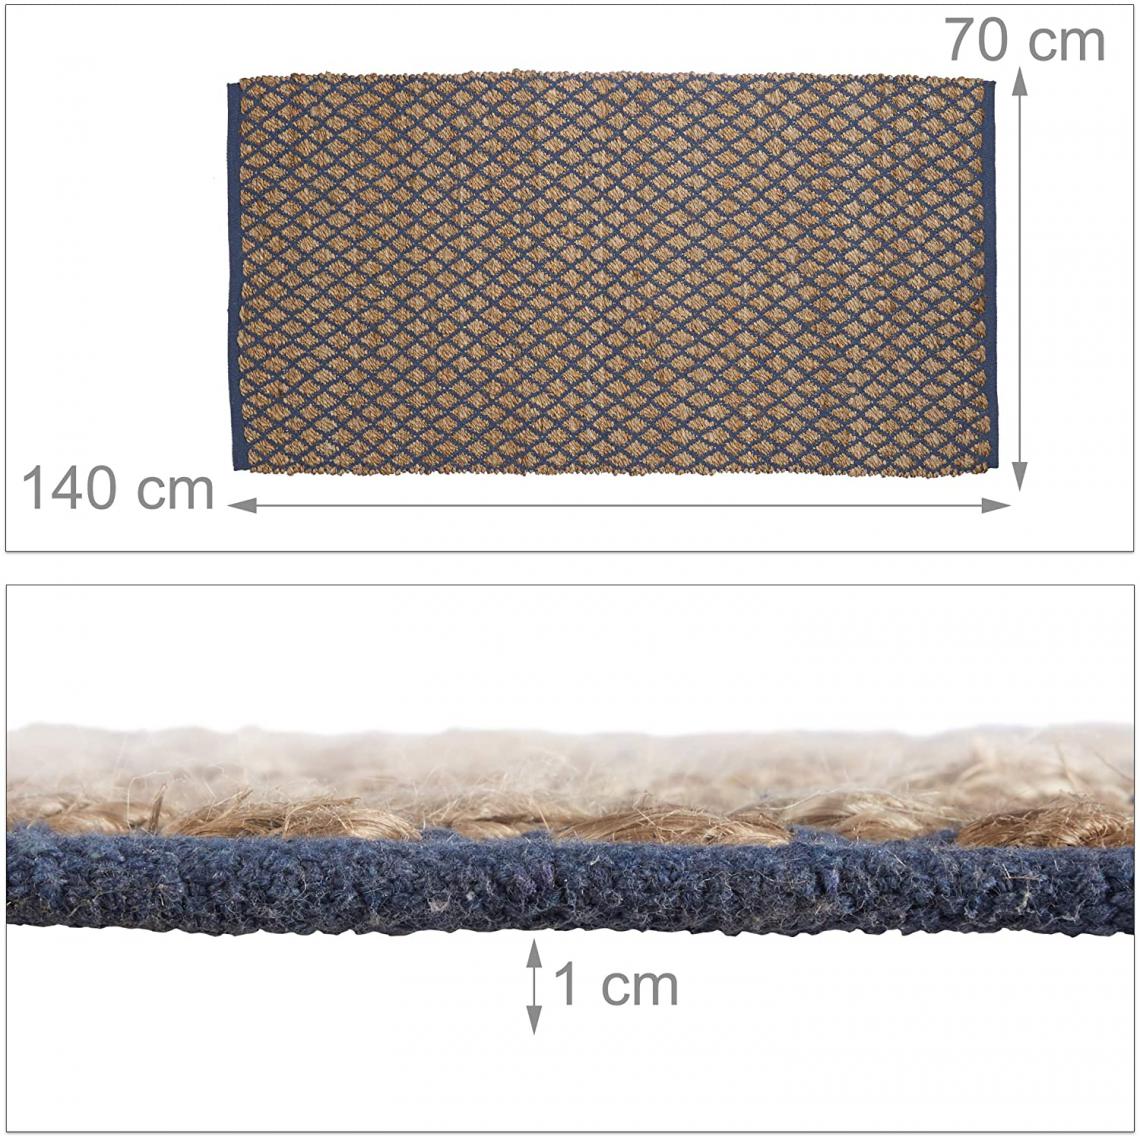 Helloshop26 - Tapis de passage tapis de sol en jute fibre nature fait main couloir 70 x 140 cm marron 13_0002836 - Tapis